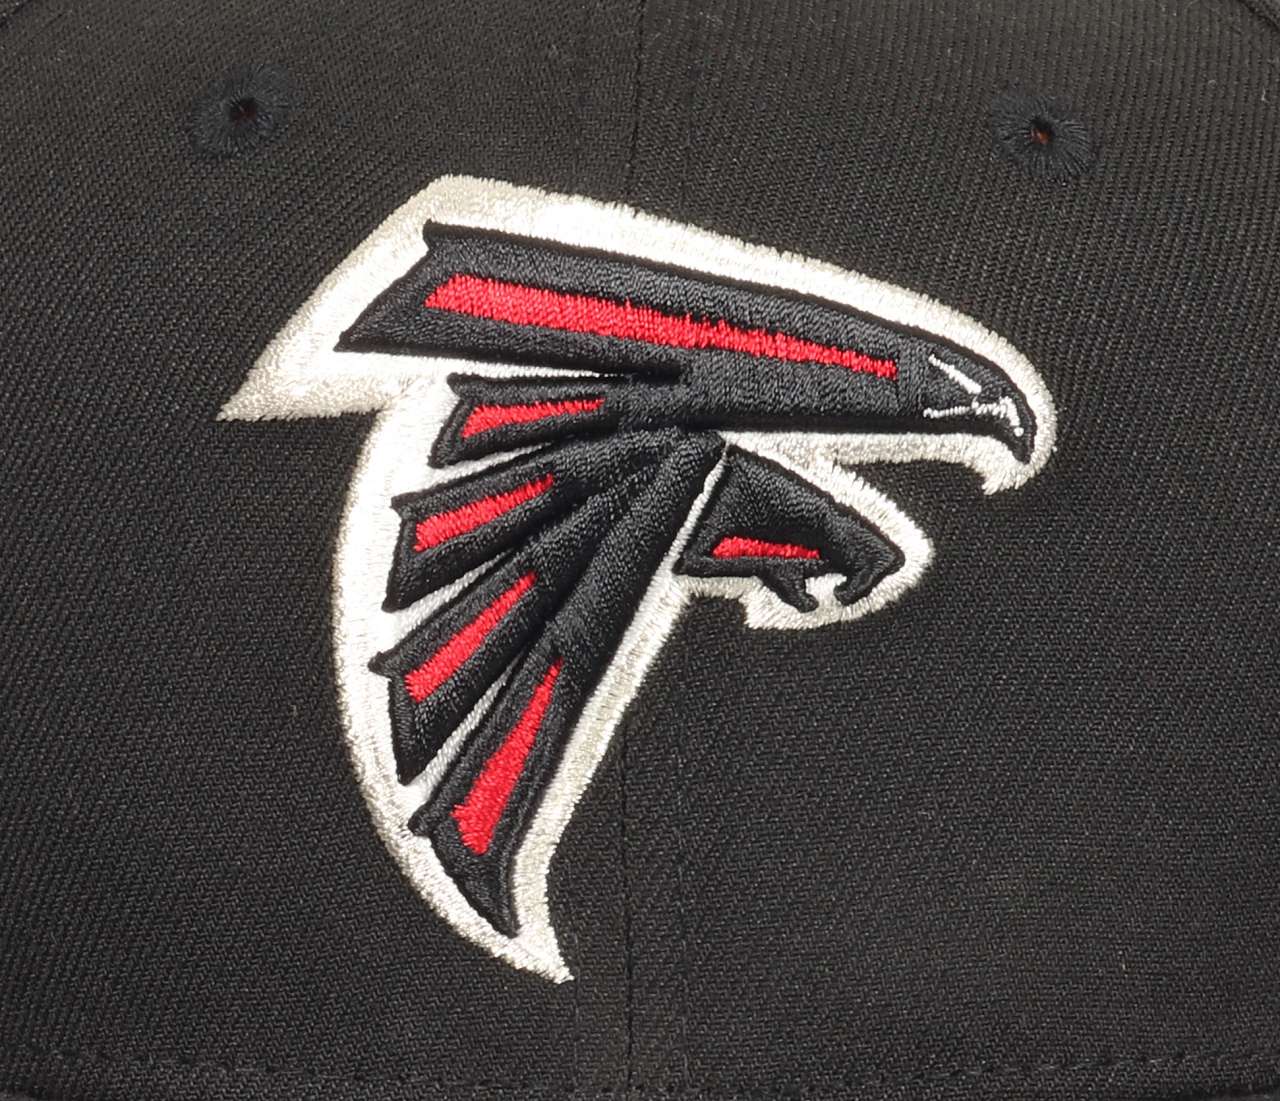 Atlanta Falcons NFL Black 9Fifty Original Fit Snapback Cap New Era